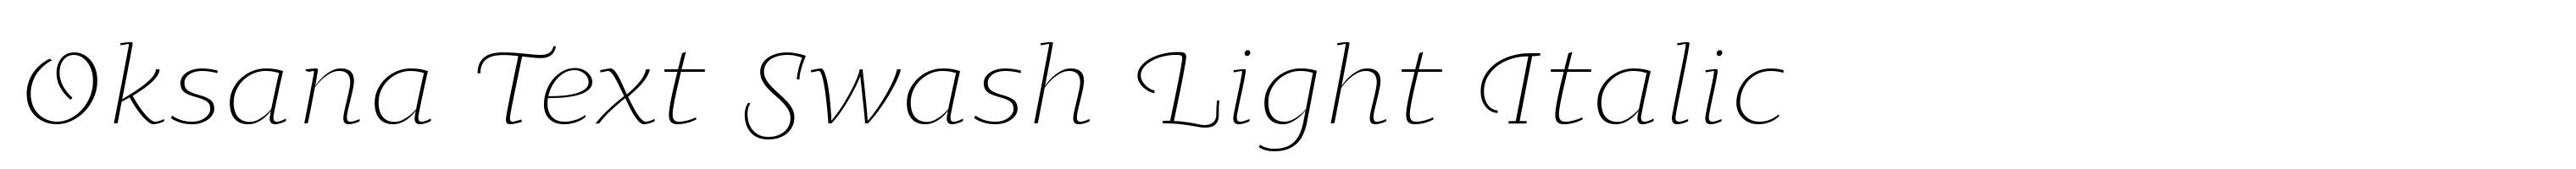 Oksana Text Swash Light Italic